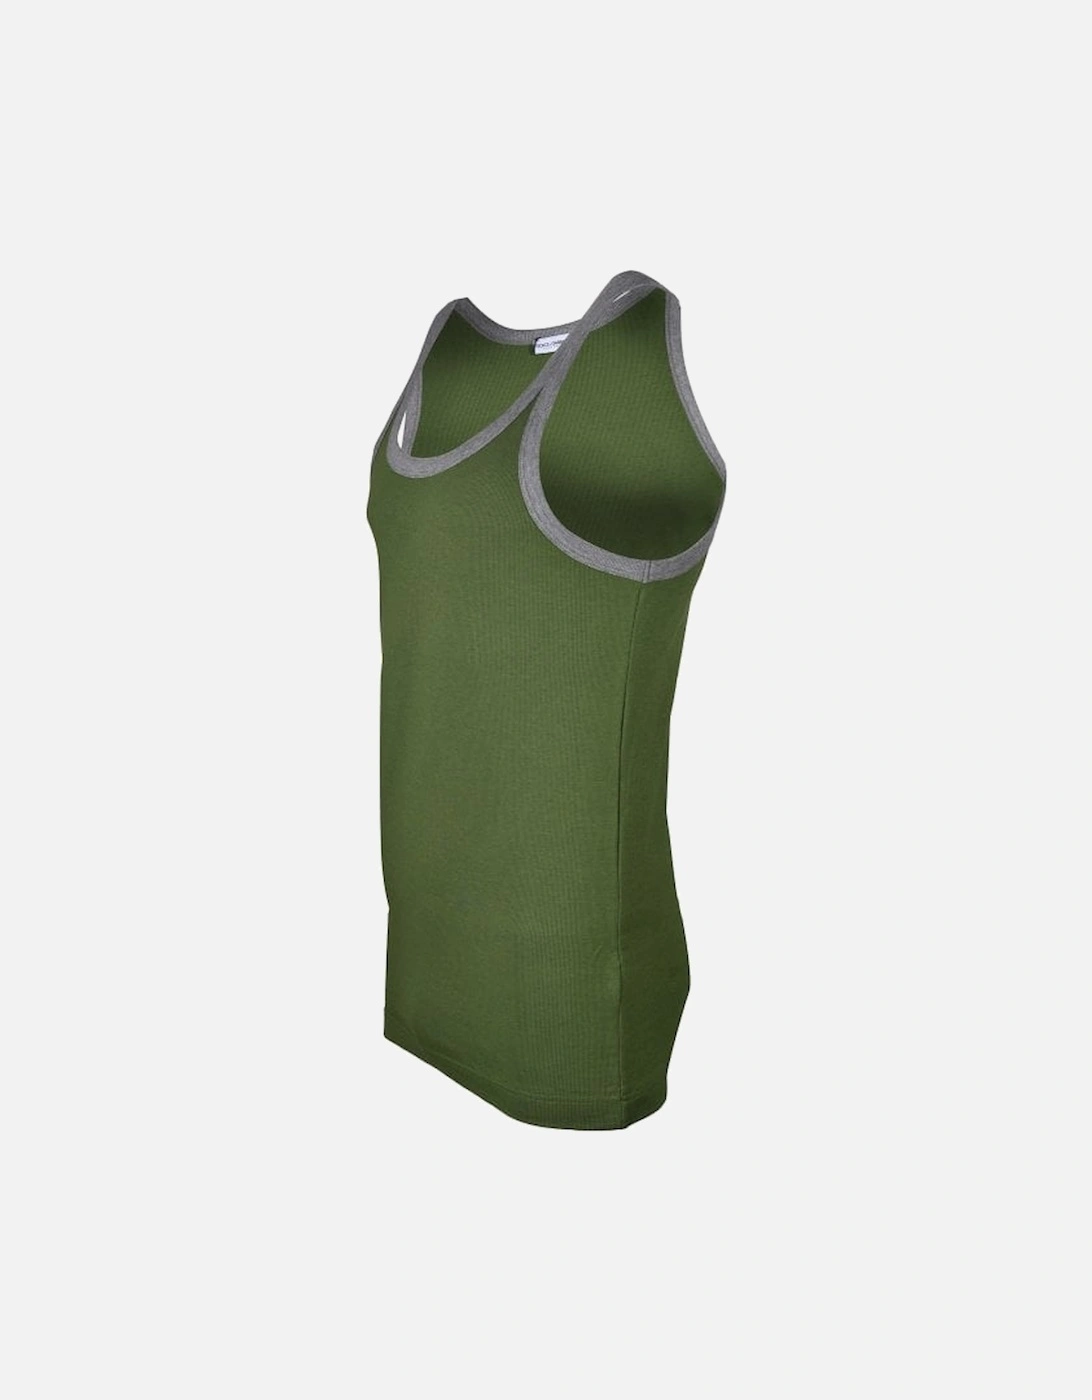 Contrast Trim Tank Top Vest, Green/grey